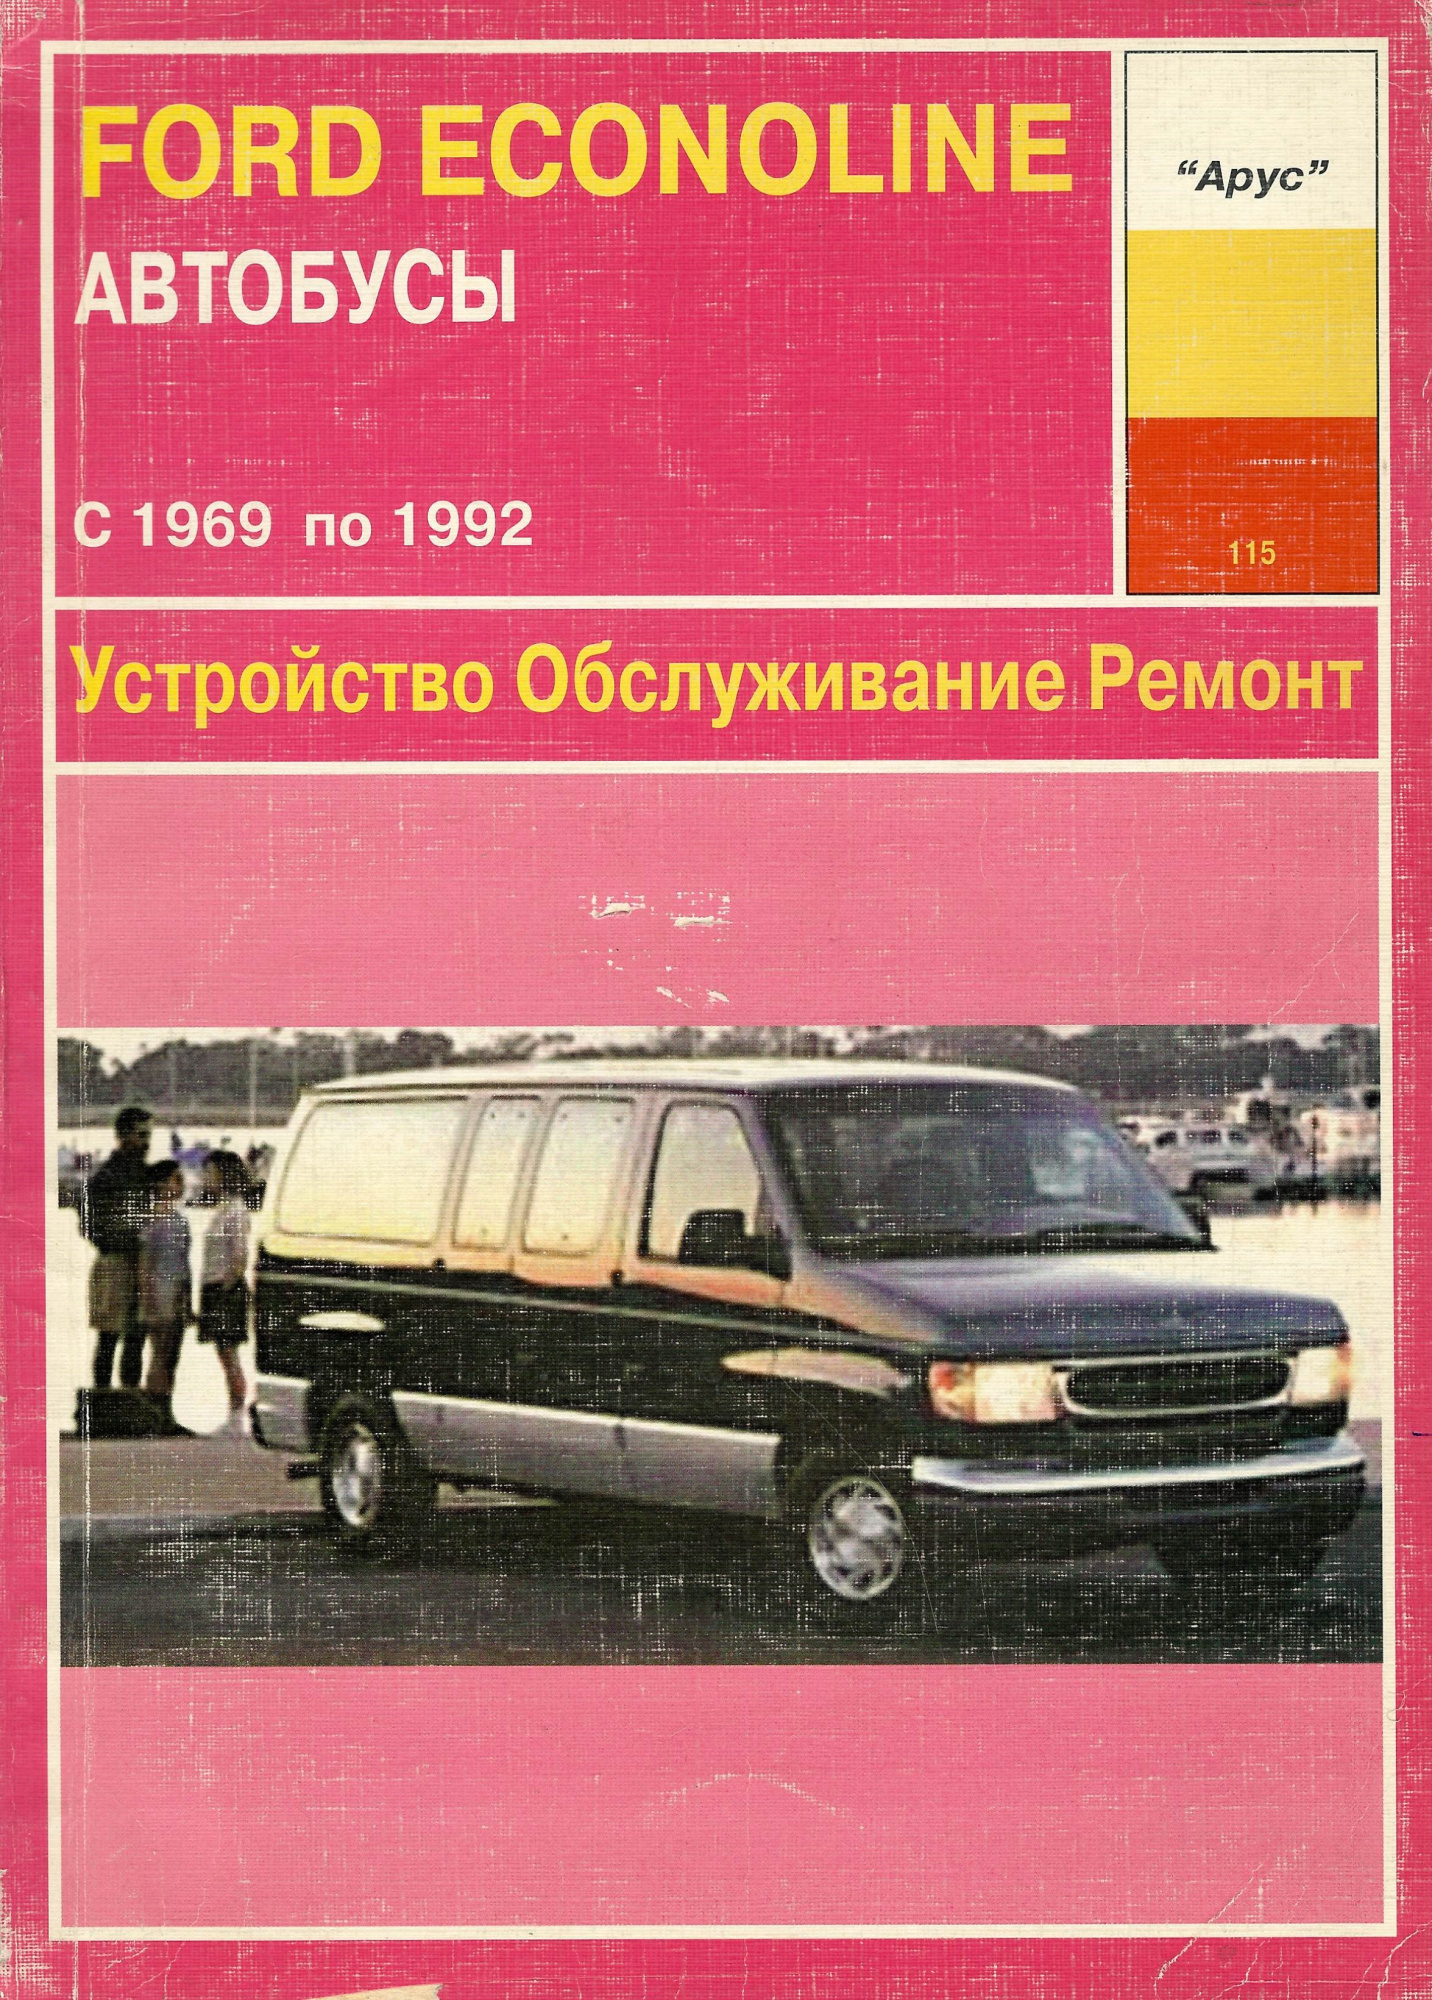 Ford Econoline Автобусы с 1969-1992. Книга руководство по ремонту и эксплуатации. Арус